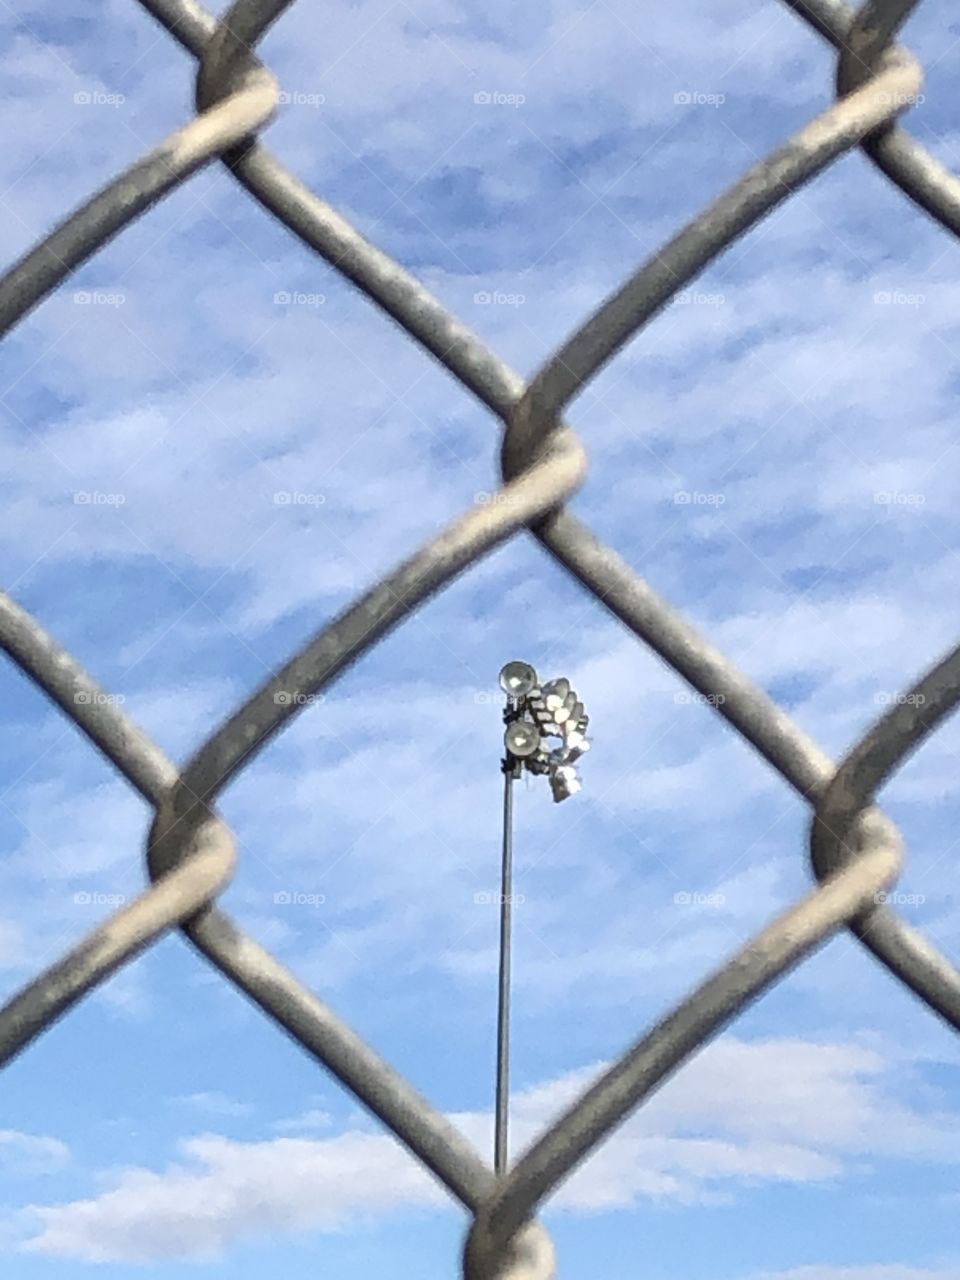 Baseball Fence and Light